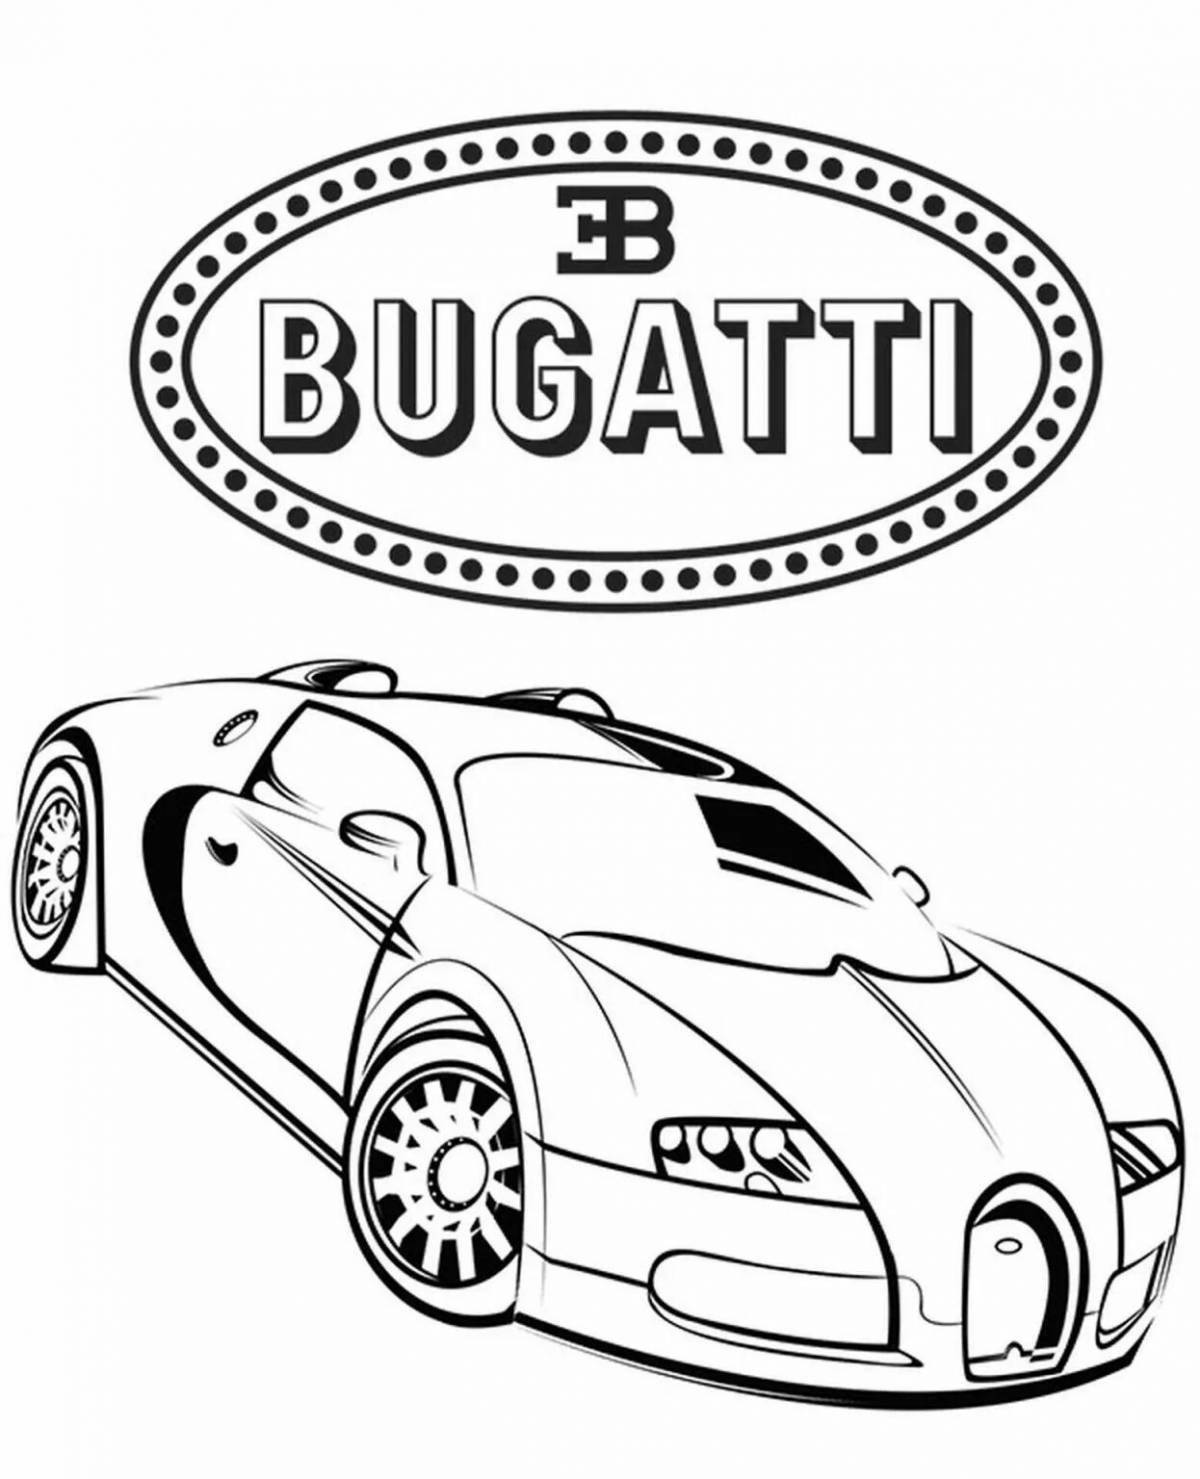 Bugatti bright police coloring